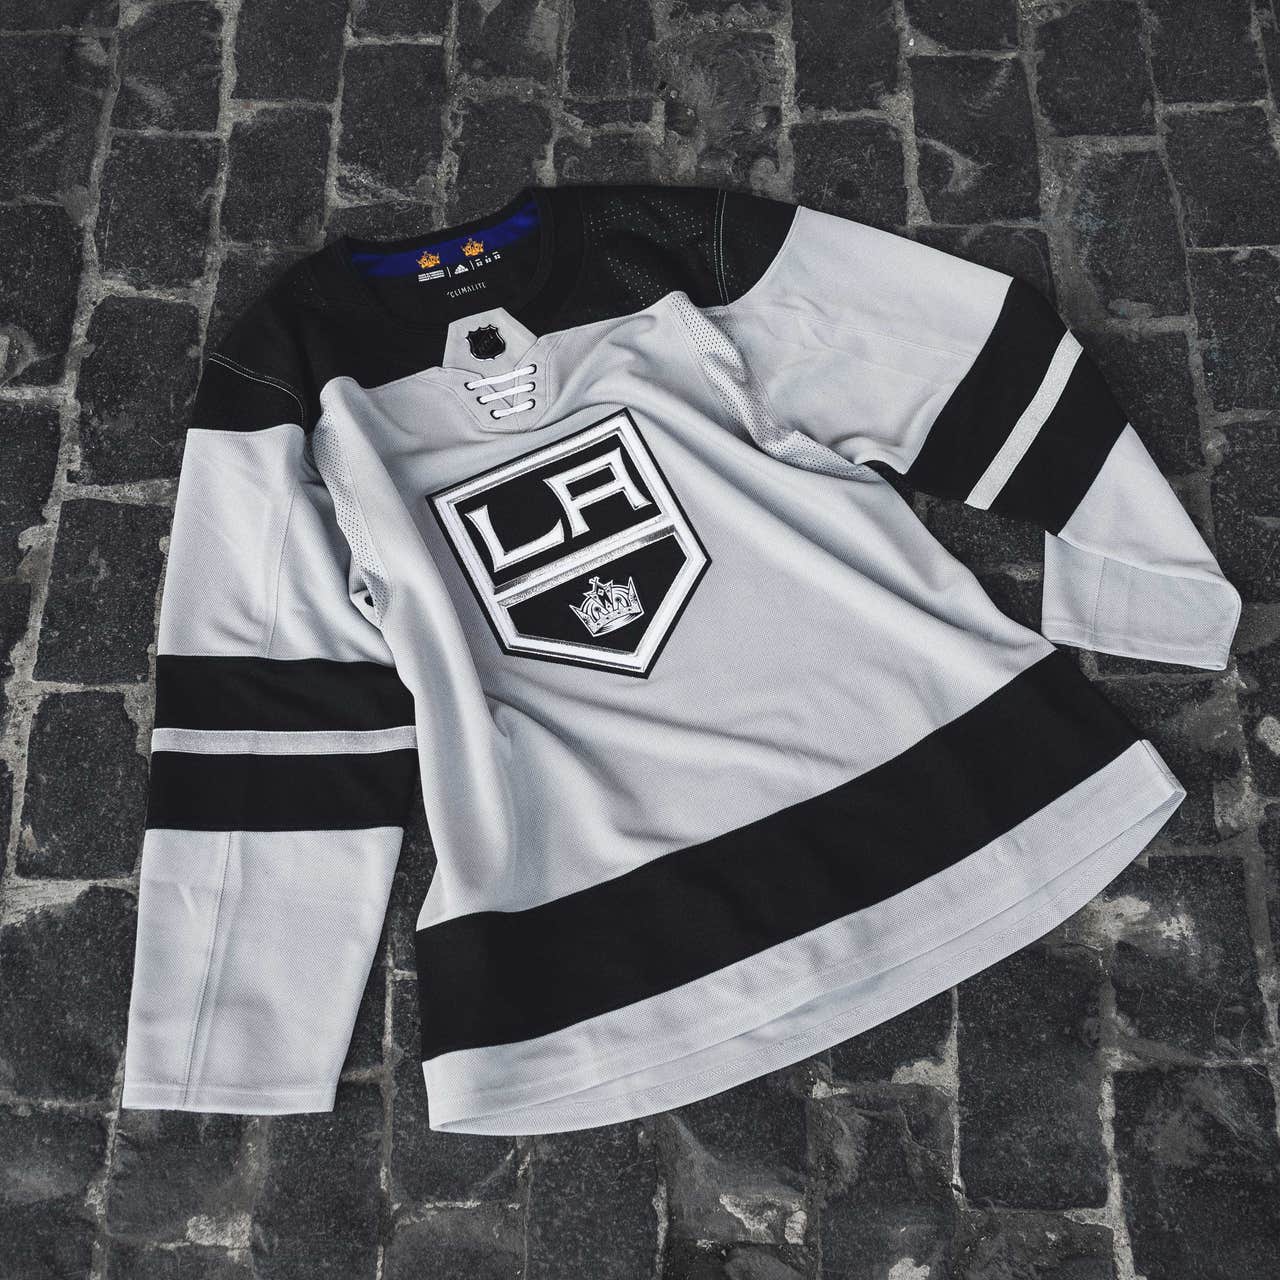 SEATTLE KRAKEN NHL JERSEY MIDNIGHT COLOR Men's Adidas ON ICE